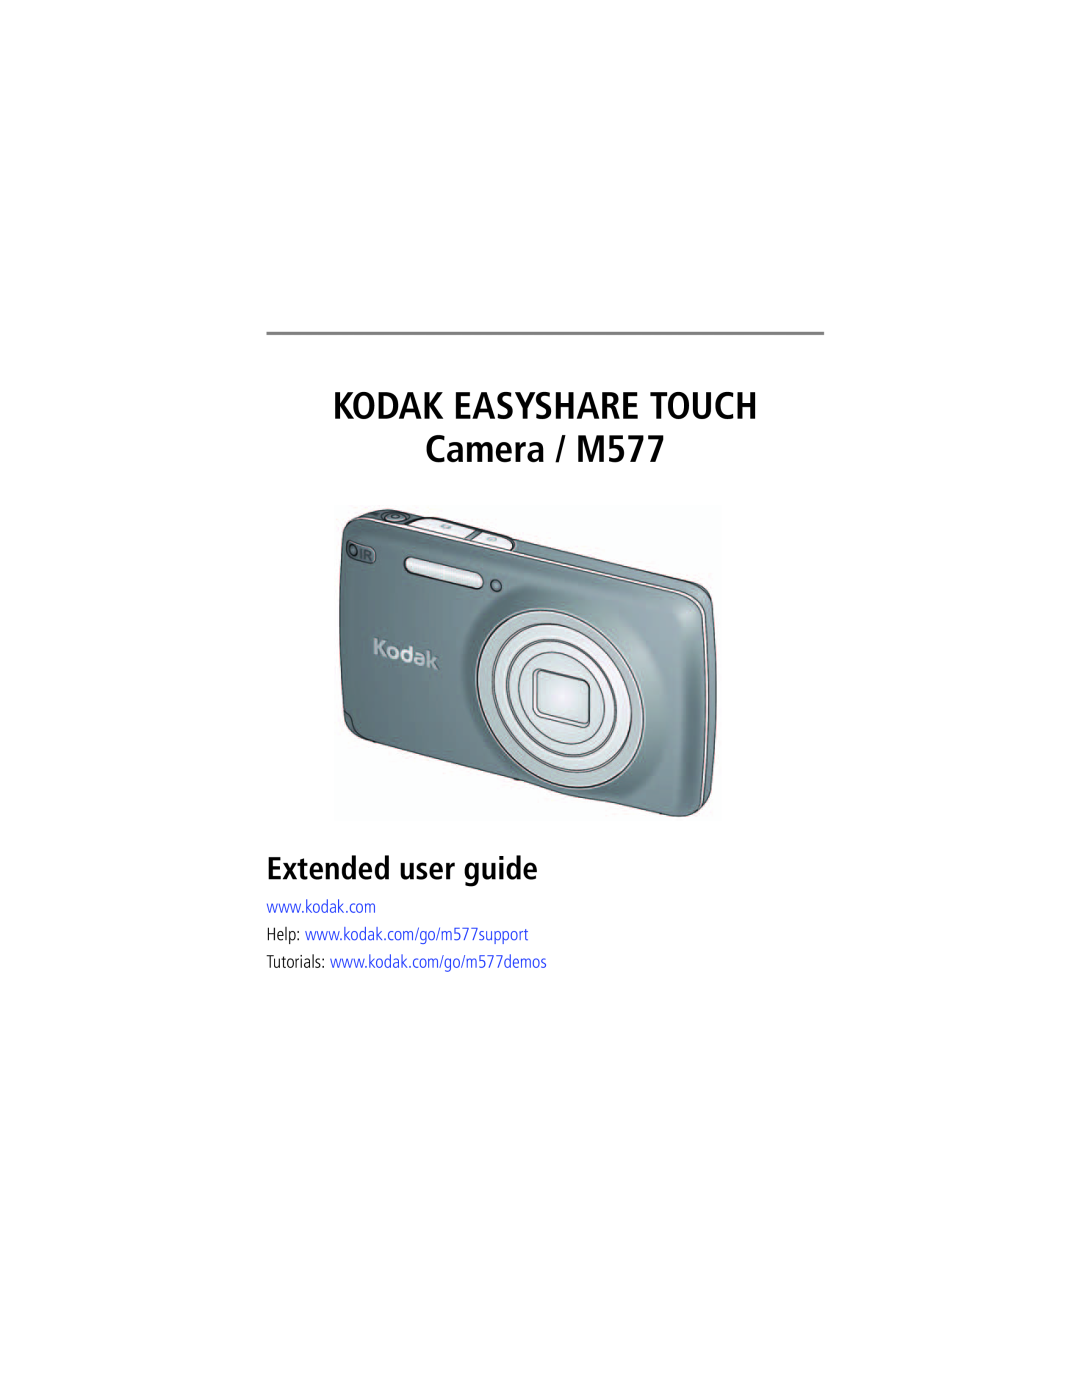 Kodak manual KODAK EASYSHARE TOUCH Camera / M577, Extended user guide 